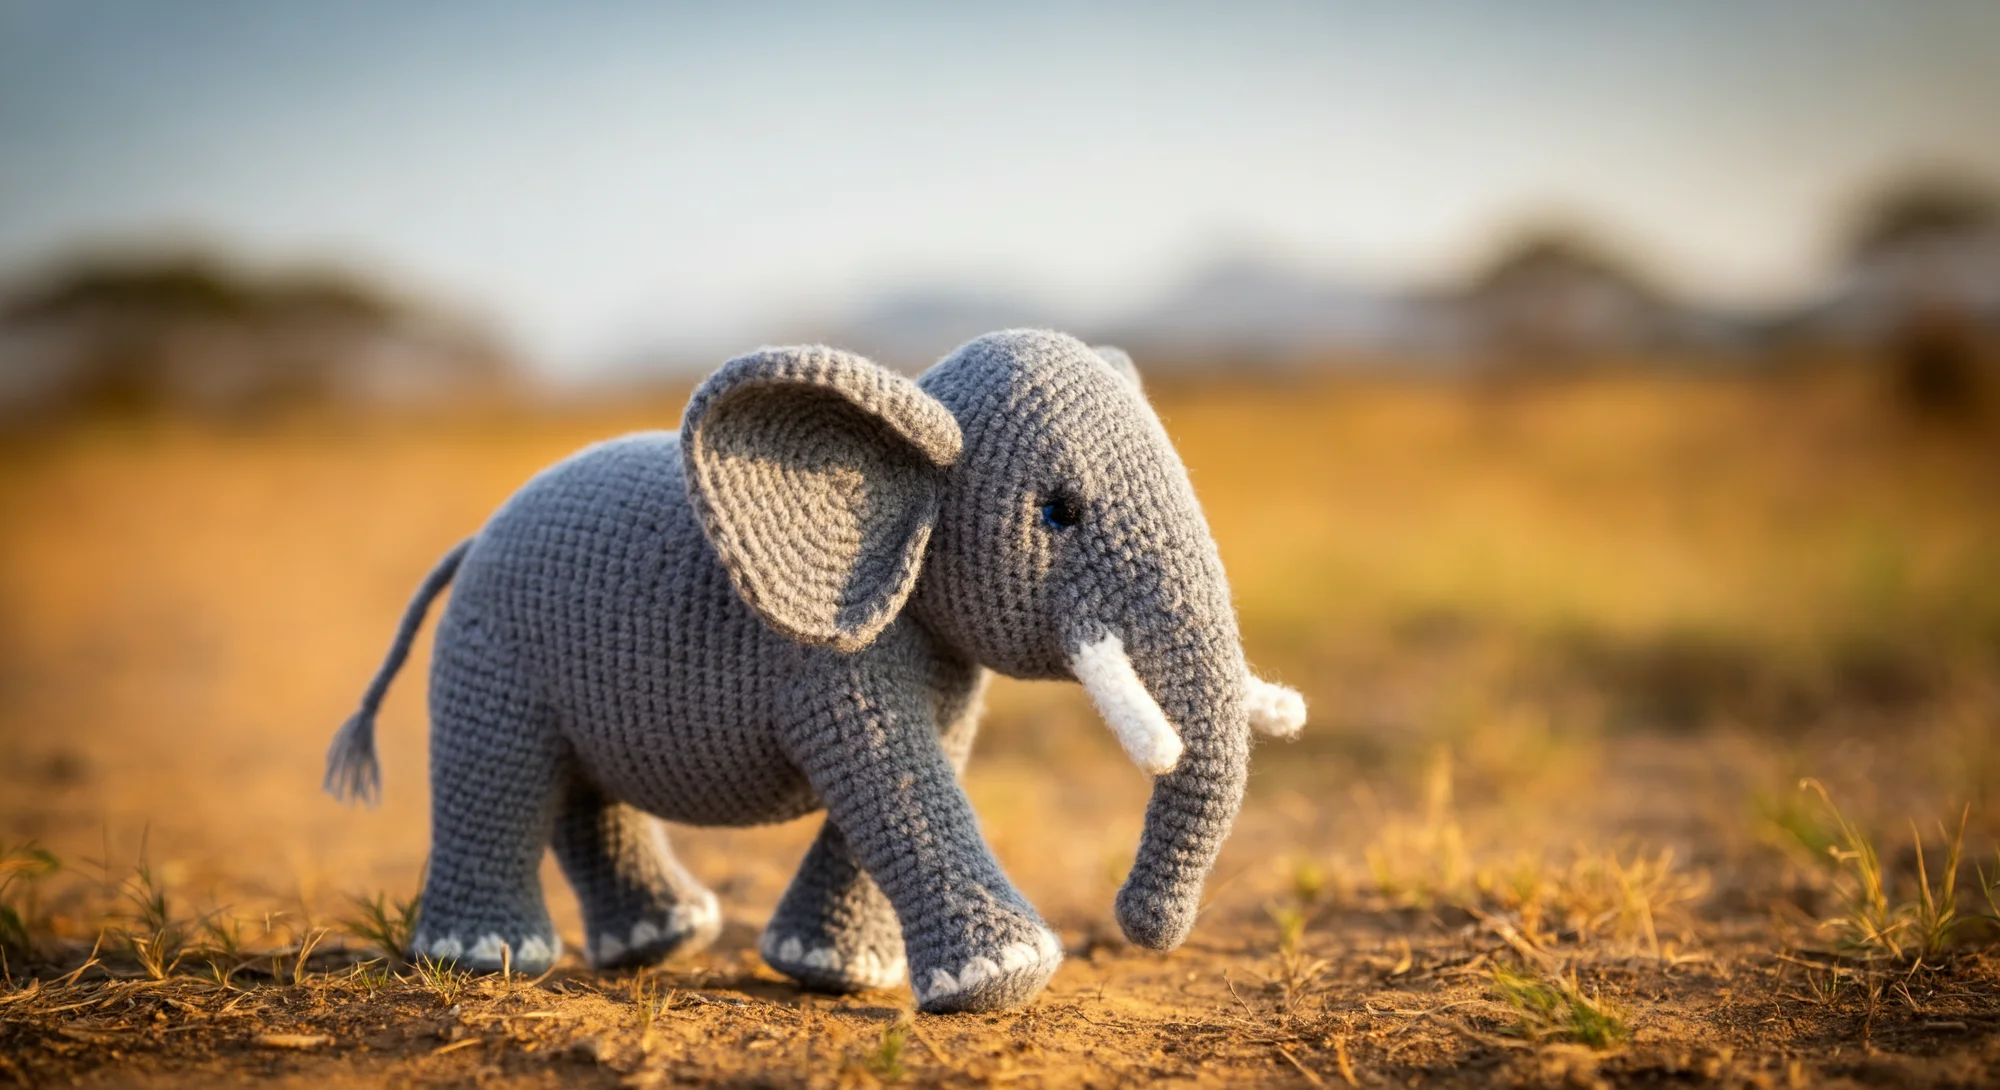 Un pequeño elefante de juguete gris de ganchillo se encuentra en un camino de tierra en un campo de hierba. El elefante tiene colmillos y uñas de los pies blancos y ojos negros. El fondo es un borrón de follaje verde y marrón, con el sol poniéndose a lo lejos.